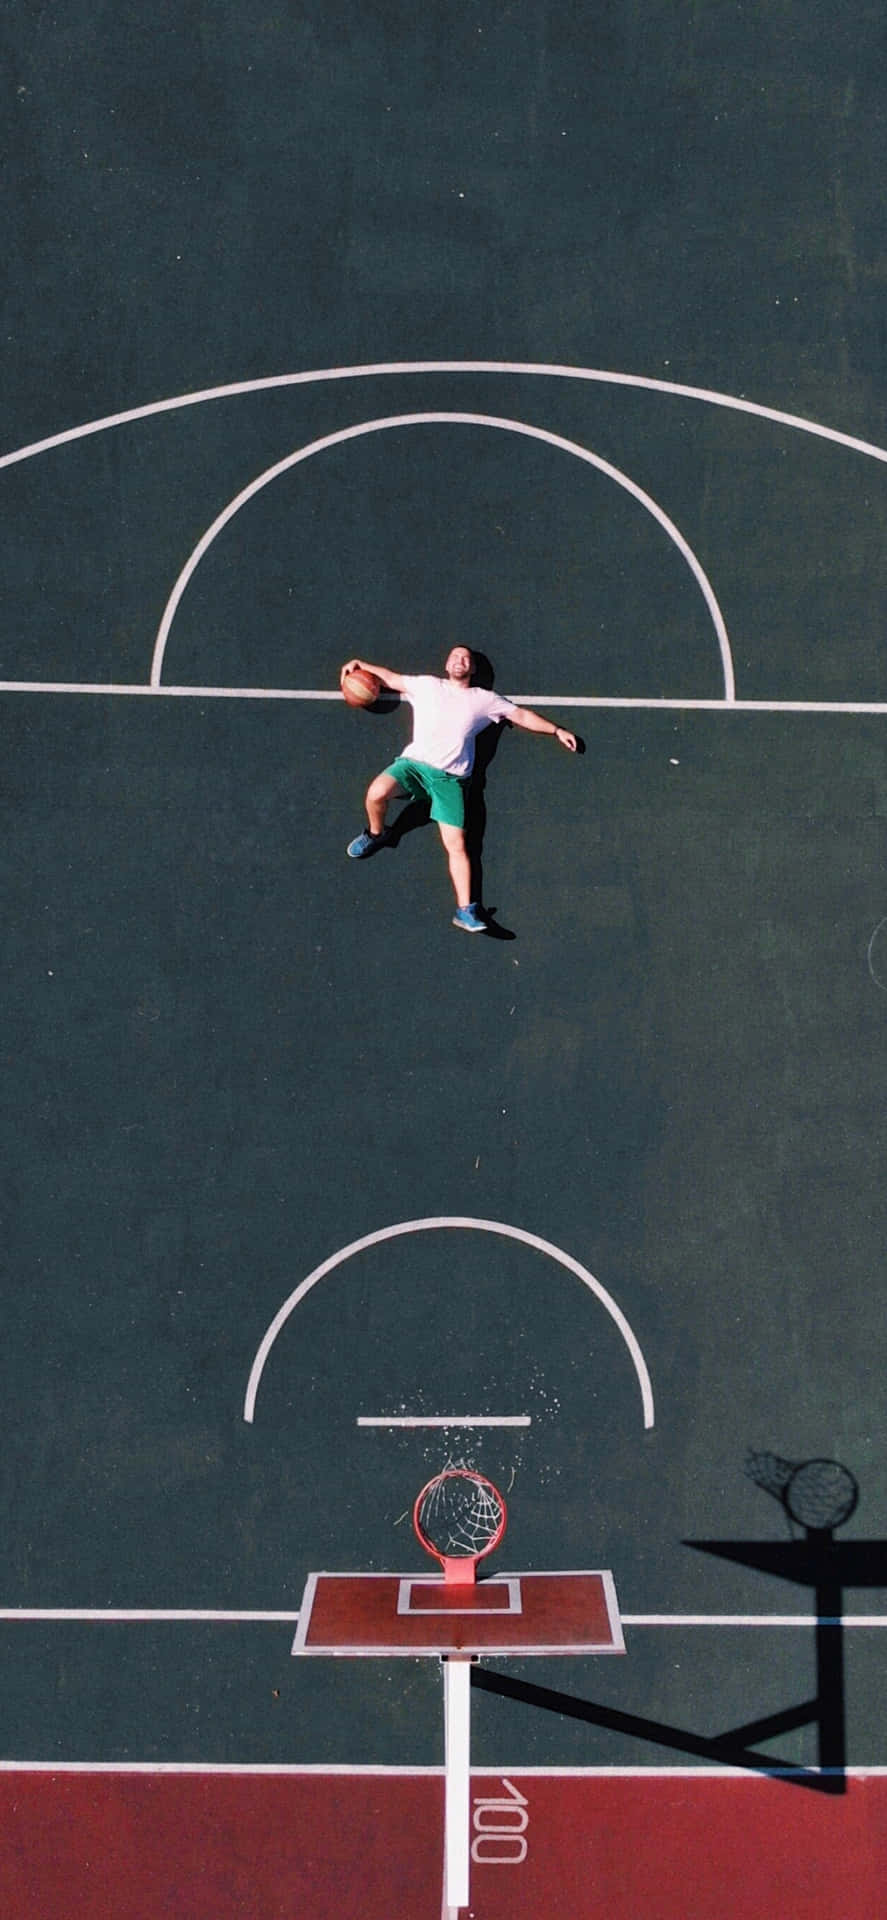 Iphonexs Basketball In Liegender Position Hintergrund